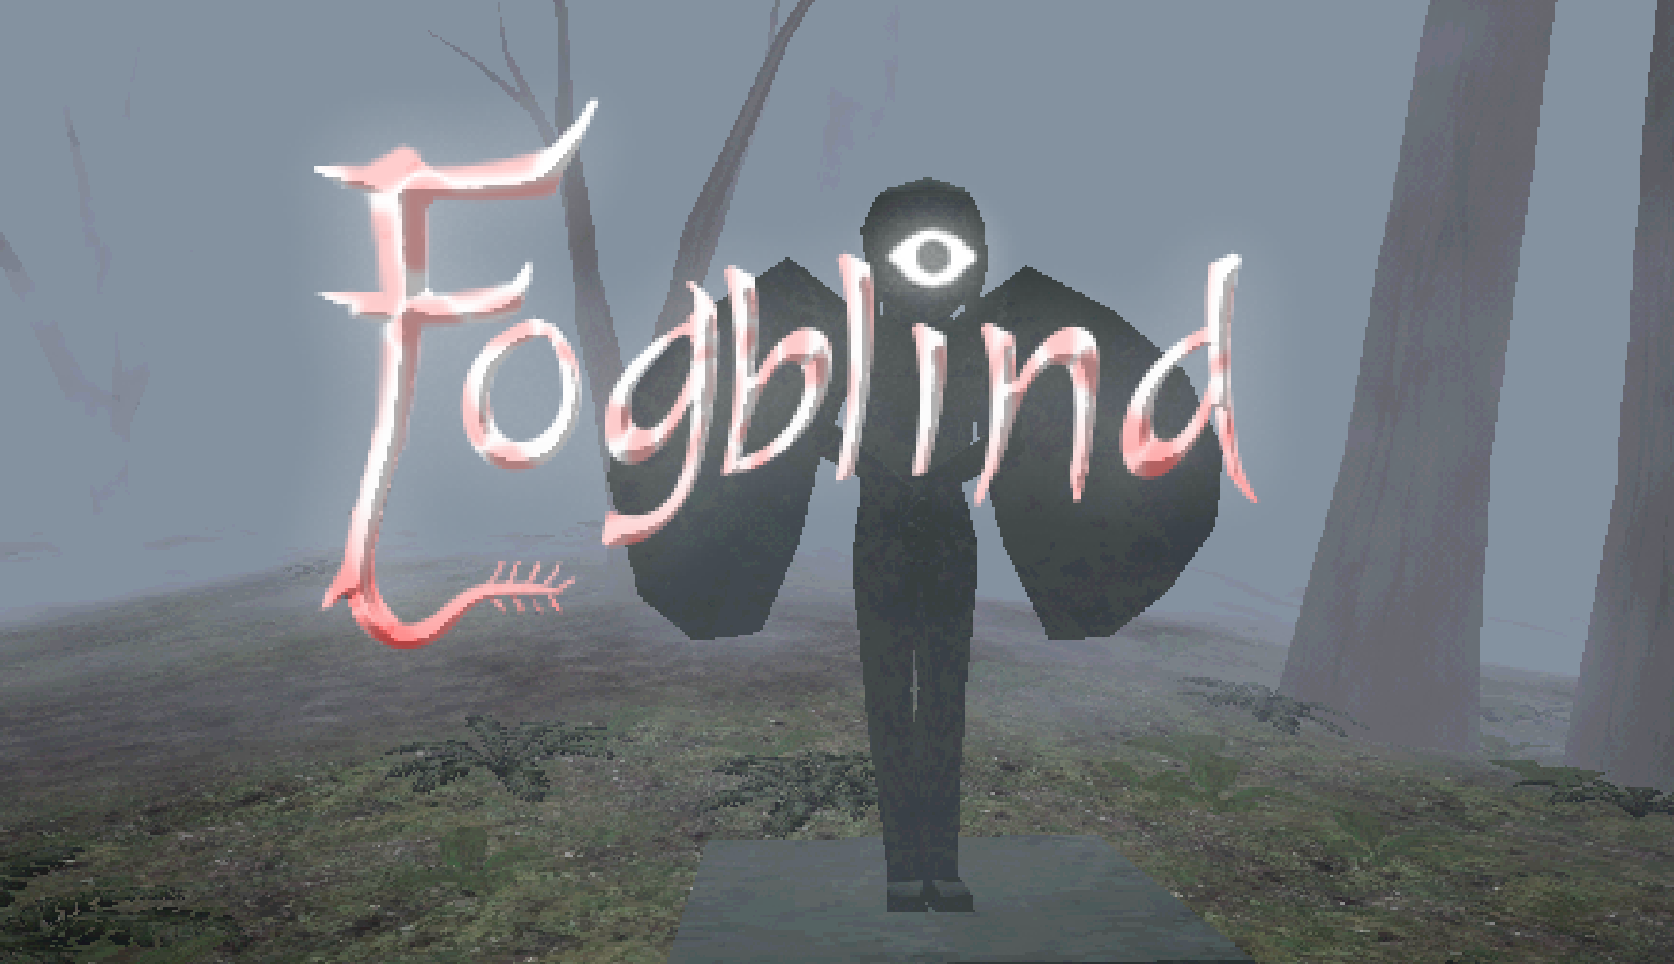 Fogblind